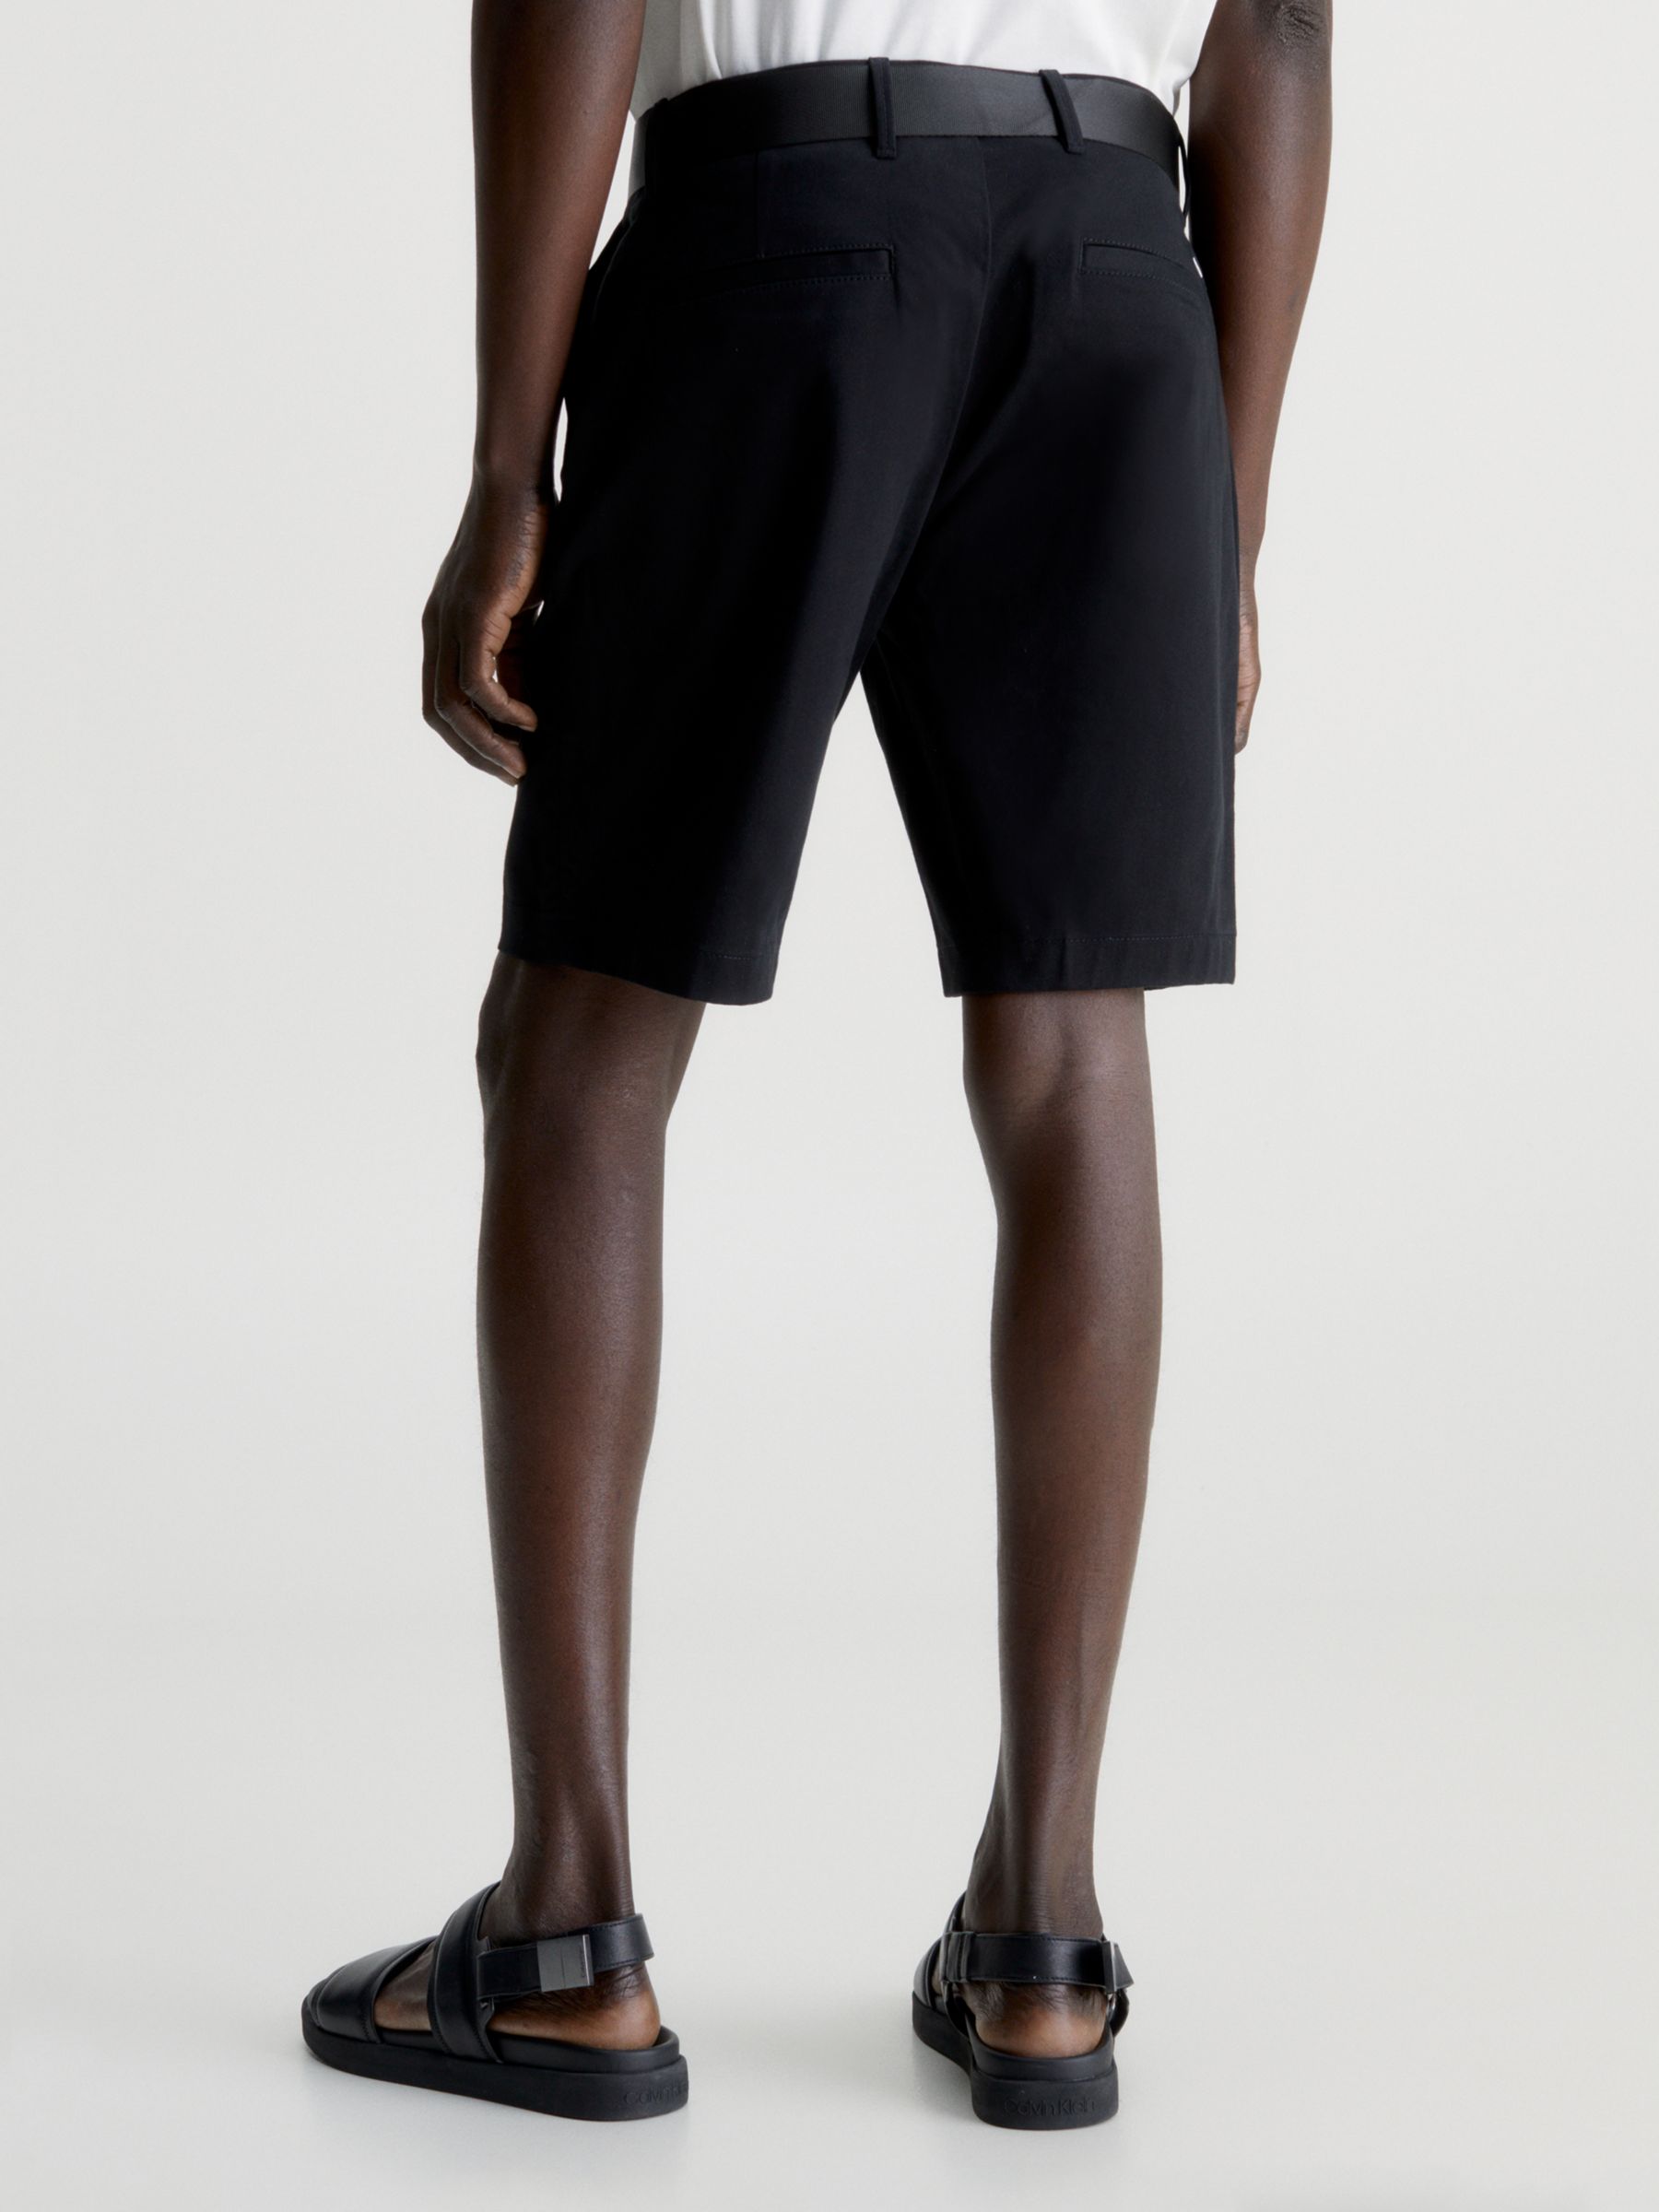 Calvin Klein Modern Twill Slim Short, Black, 30R